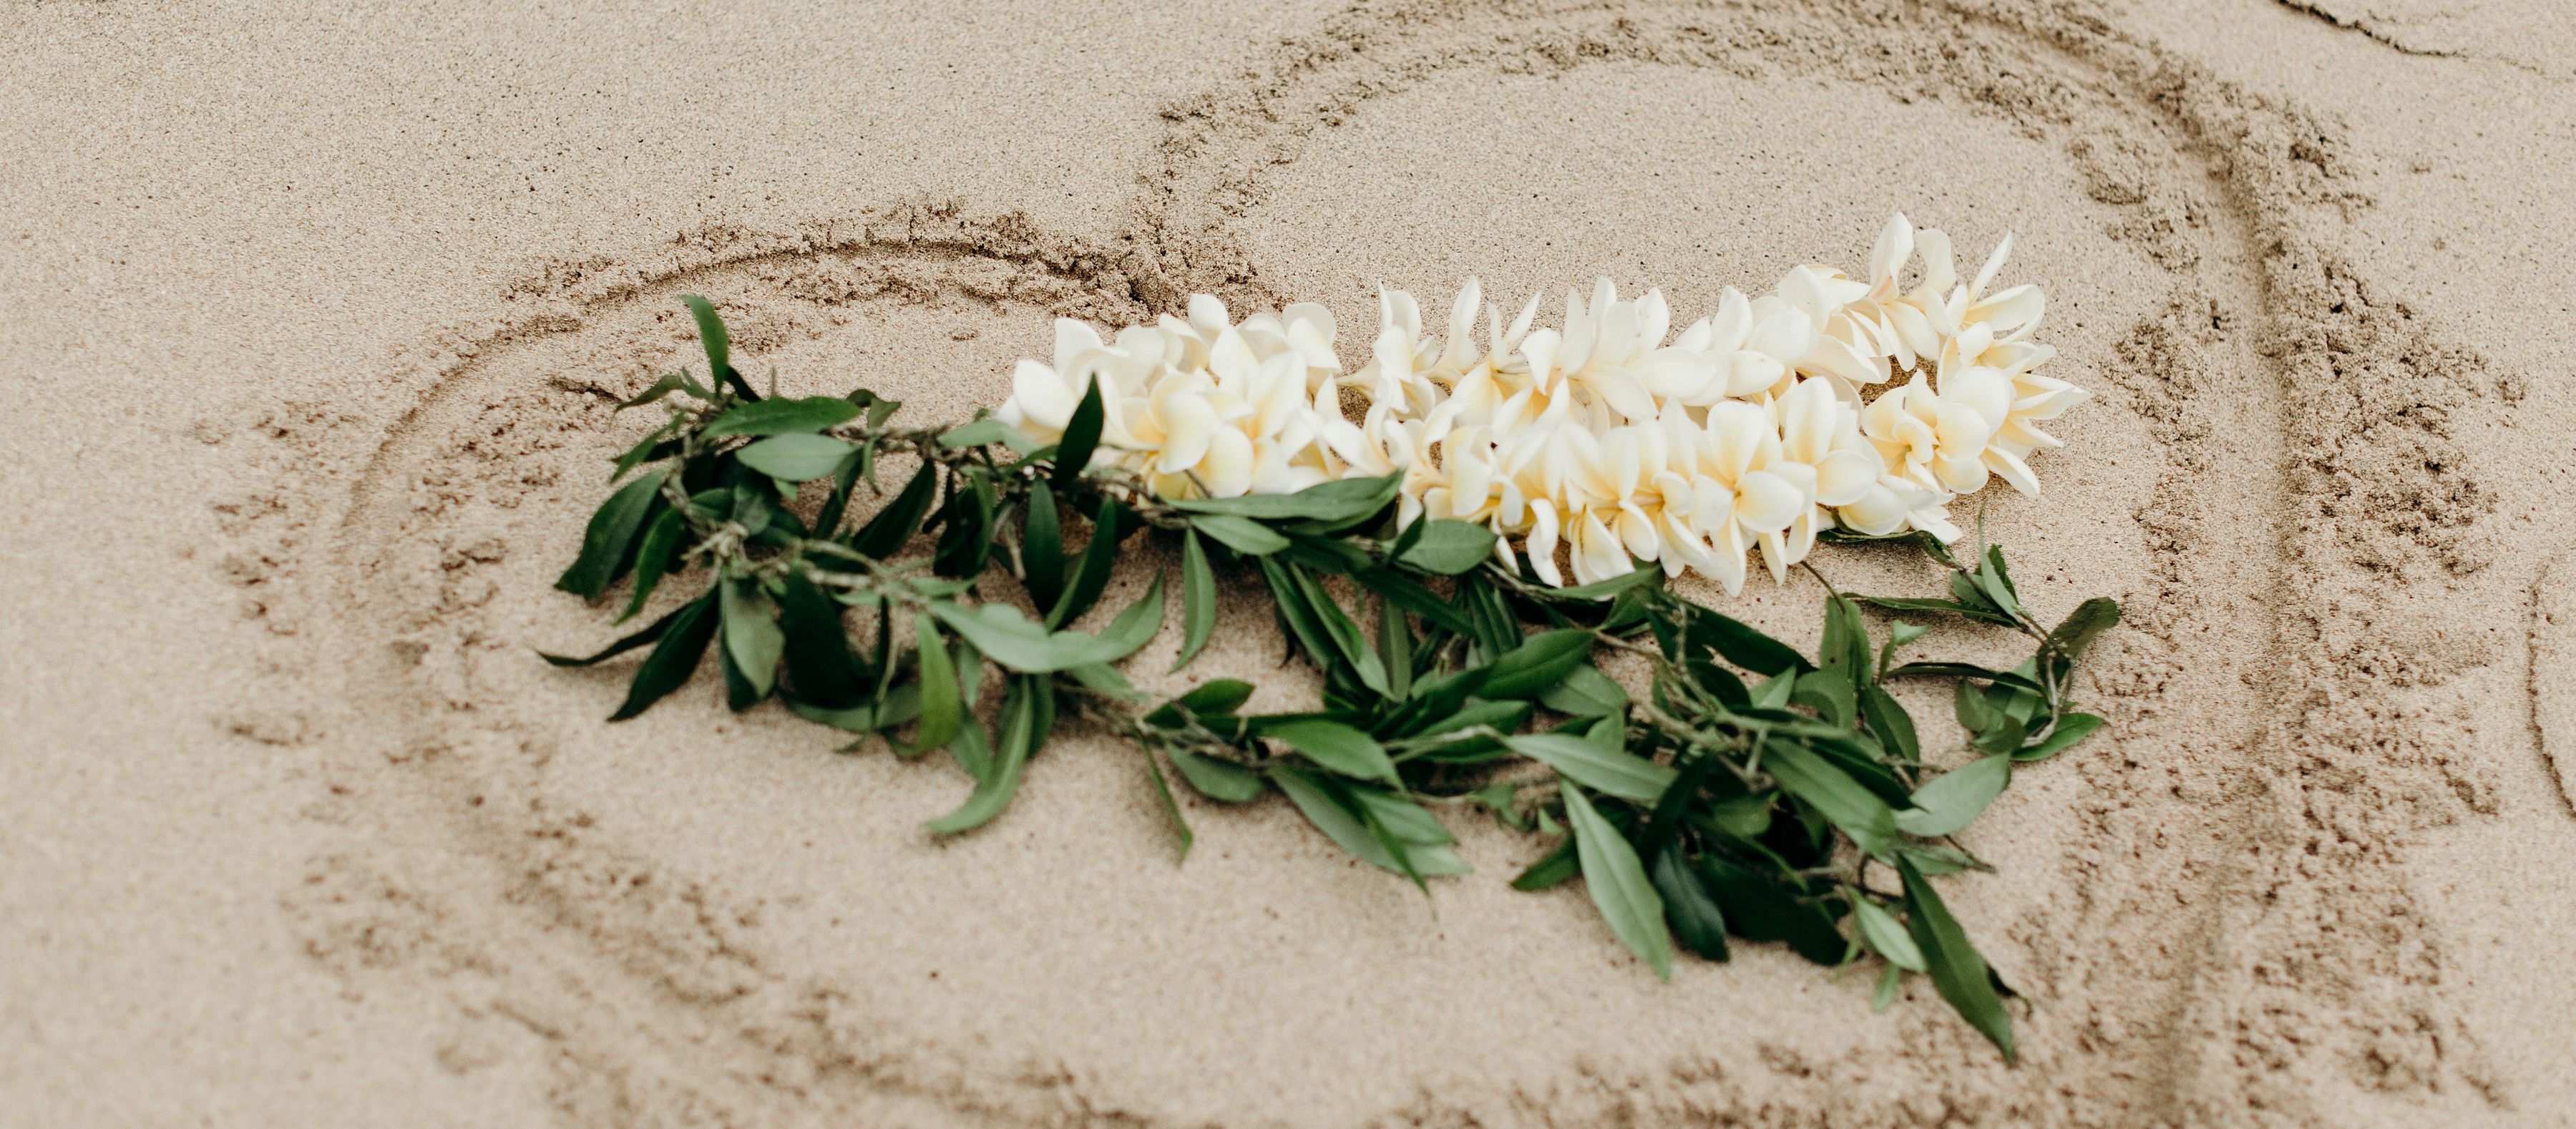 Hawaiischer Hochzeitsschmuck auf ein Herz im Sand gelegt